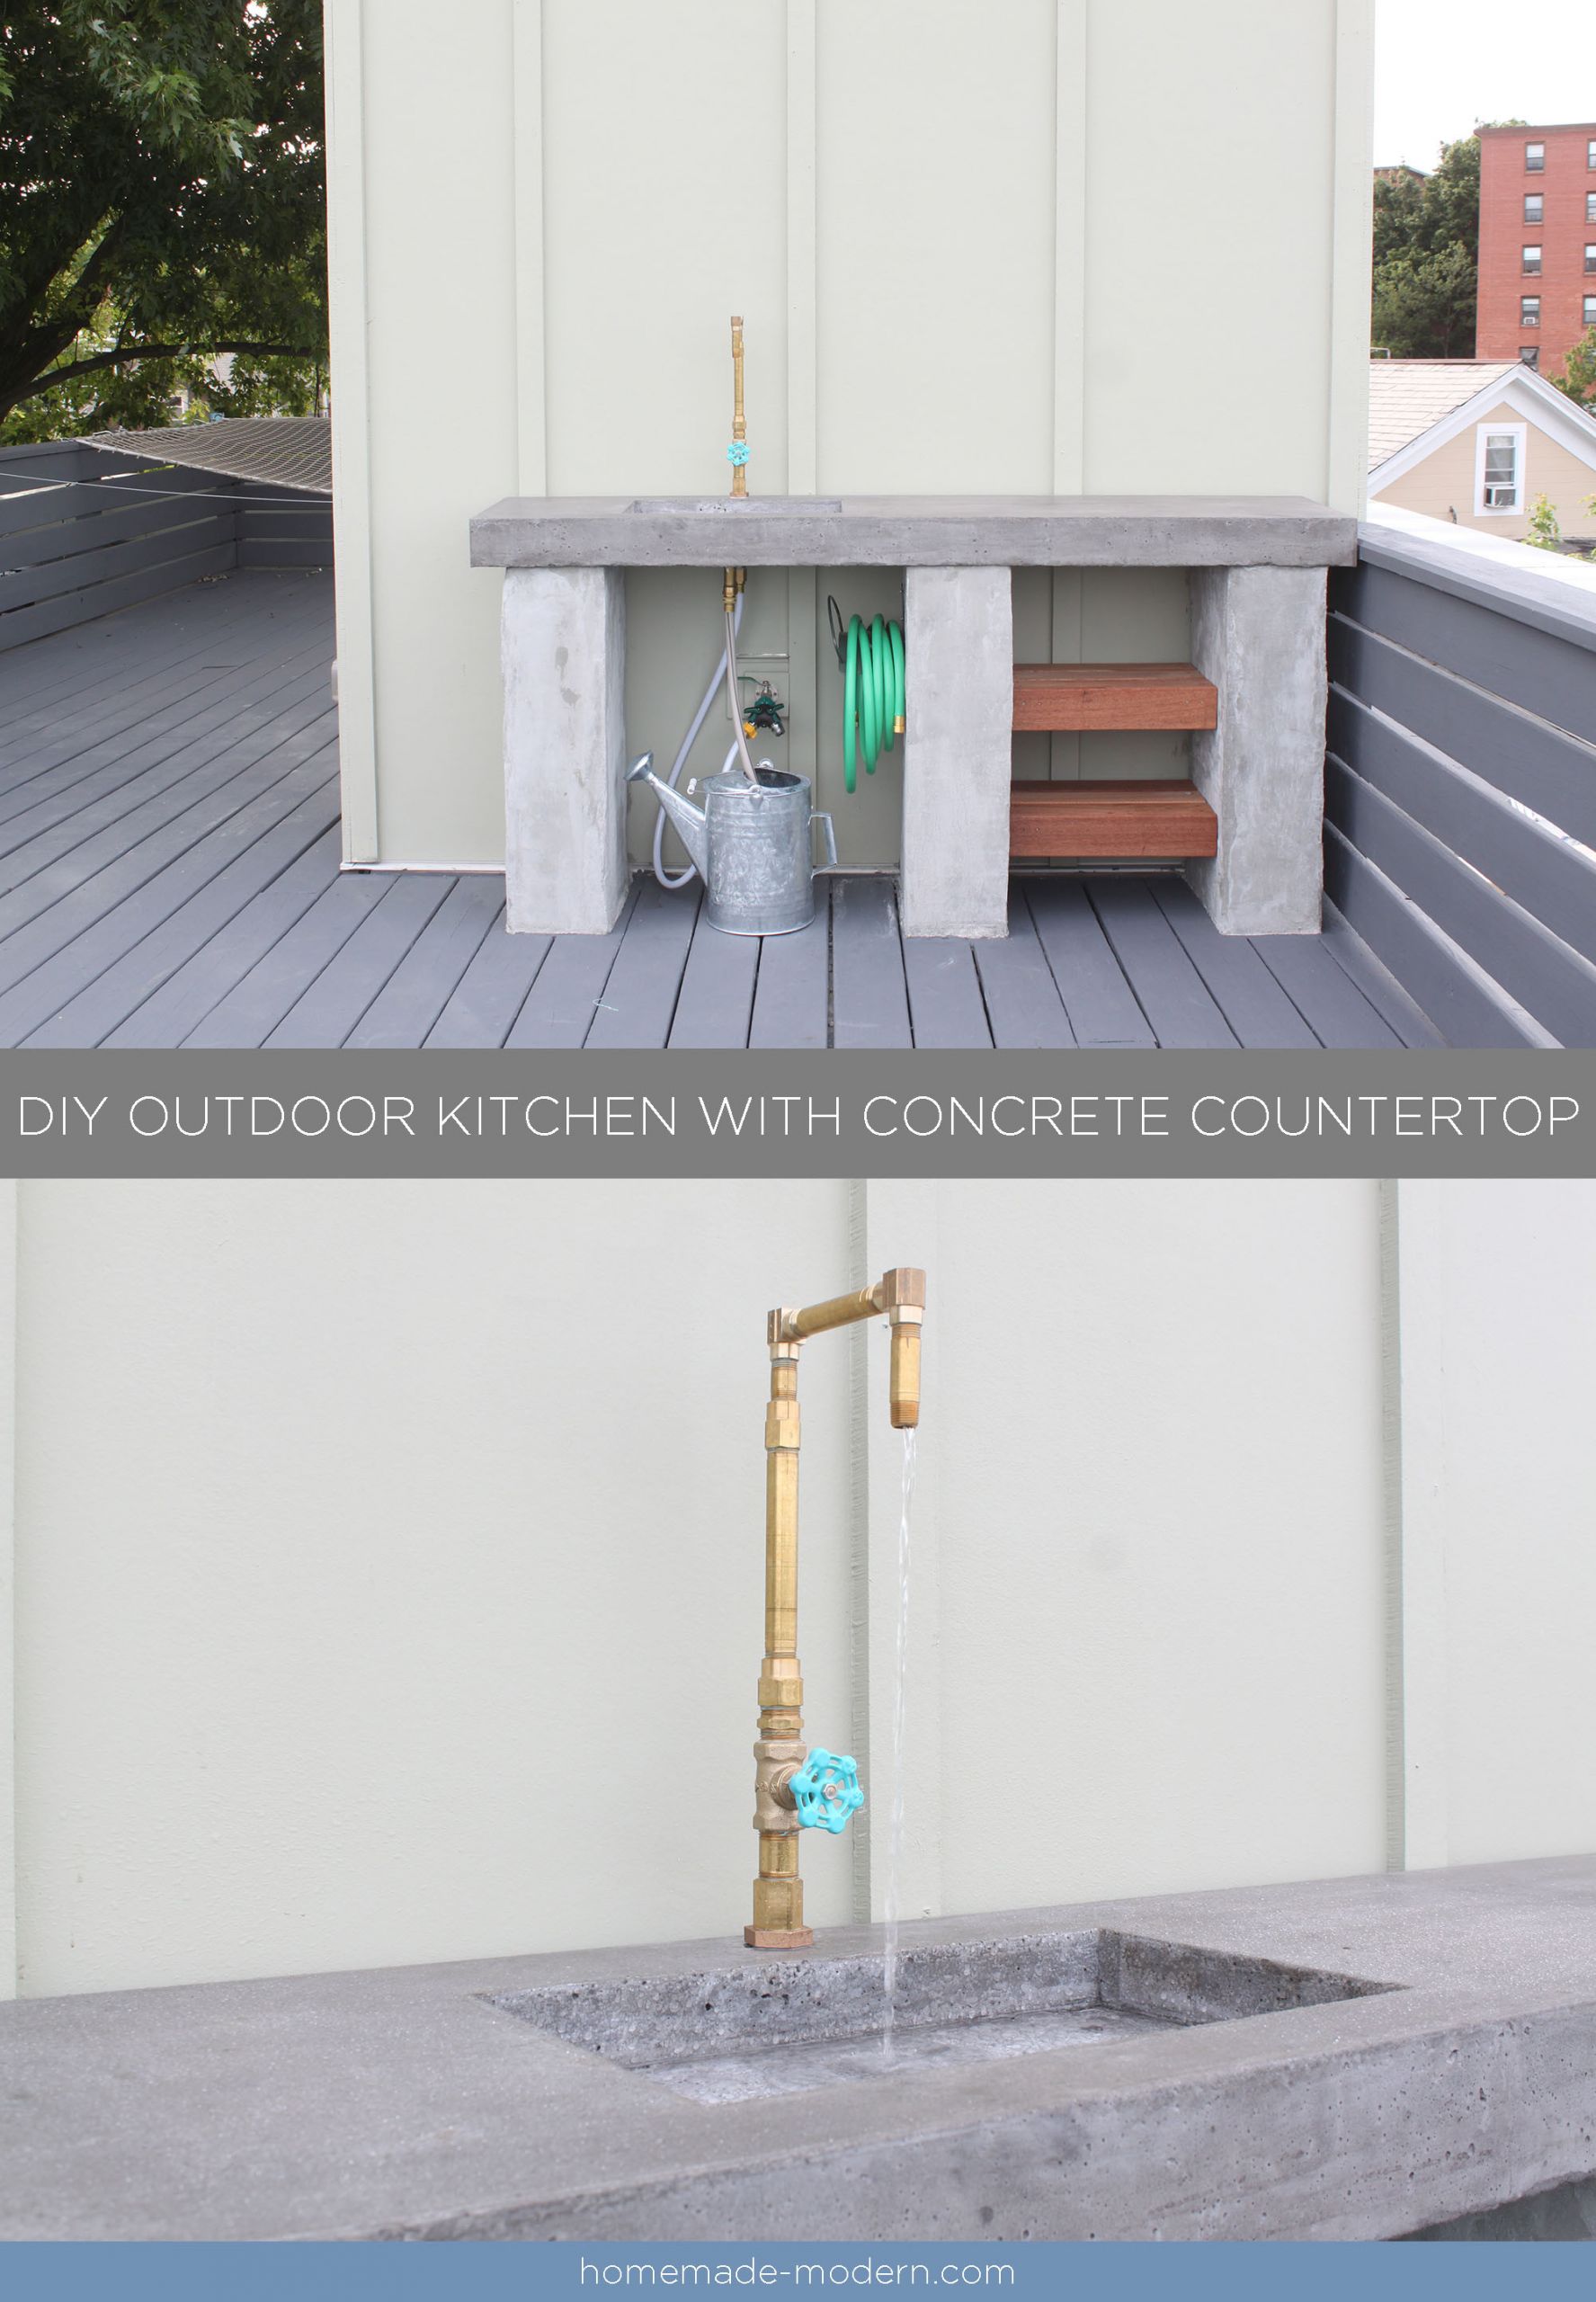 DIY Outdoor Concrete Countertops
 HomeMade Modern EP96 DIY Outdoor Kitchen with Concrete